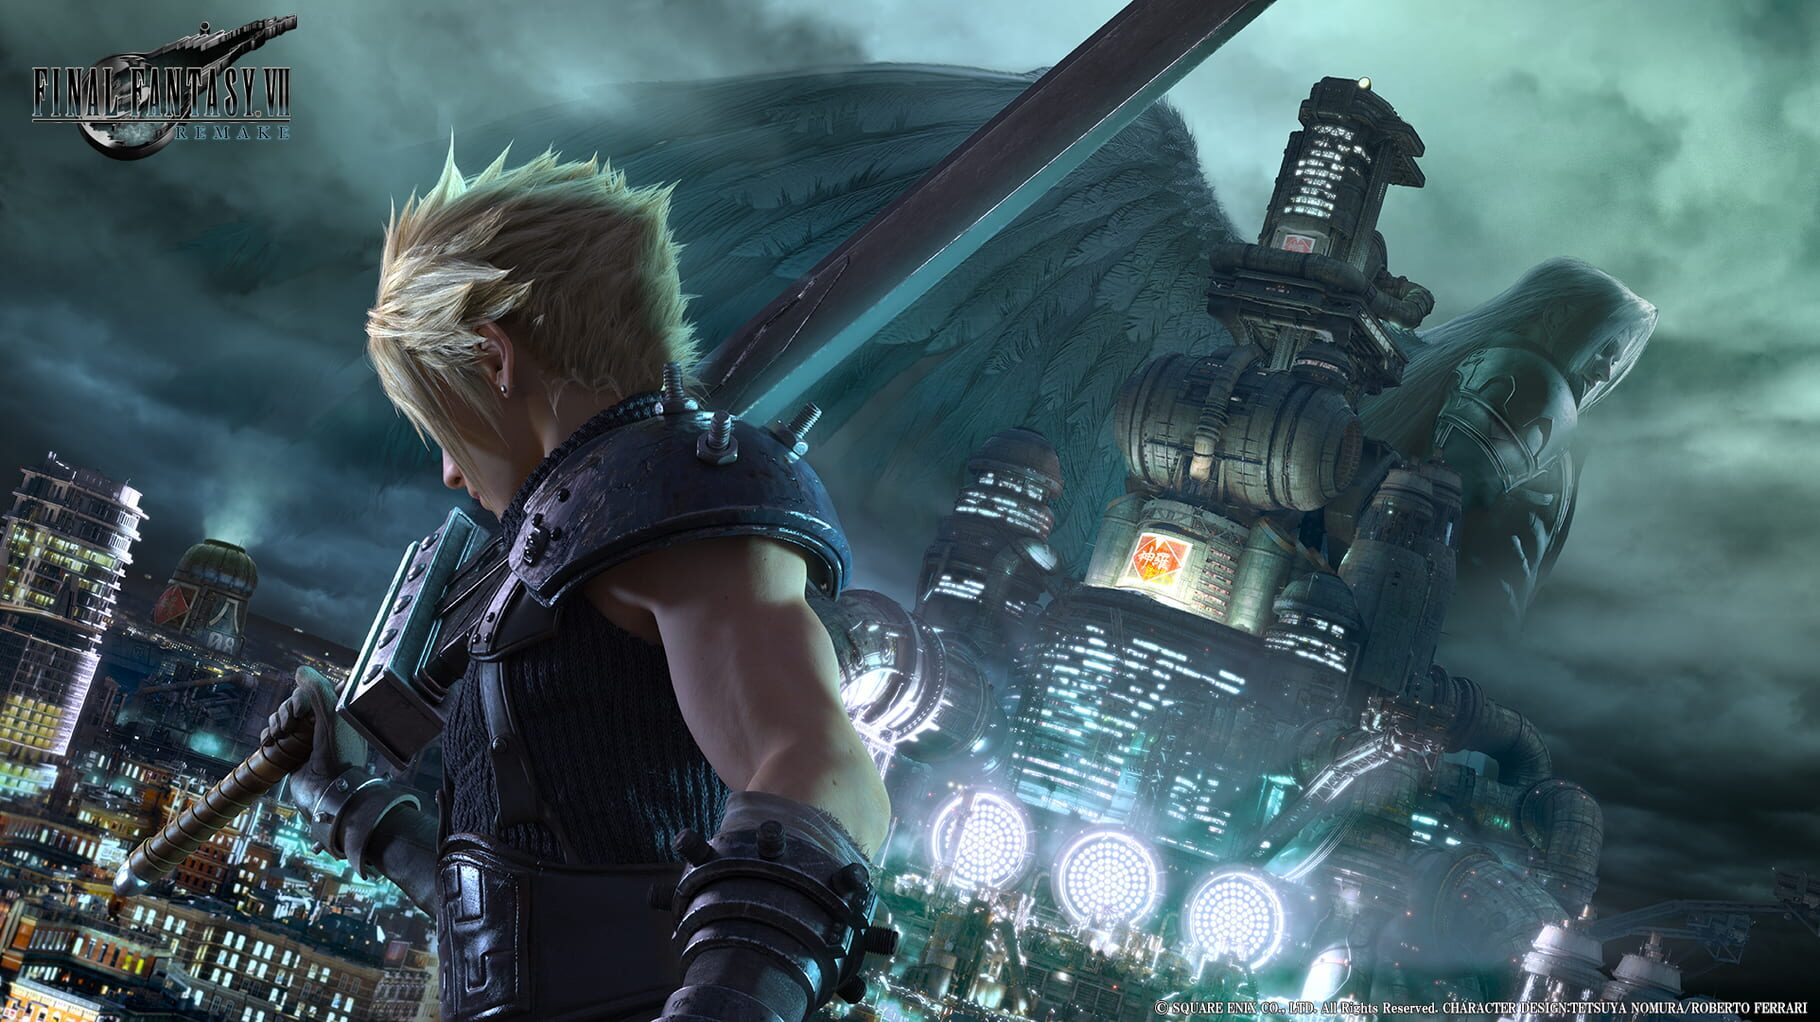 Artwork for Final Fantasy VII Remake